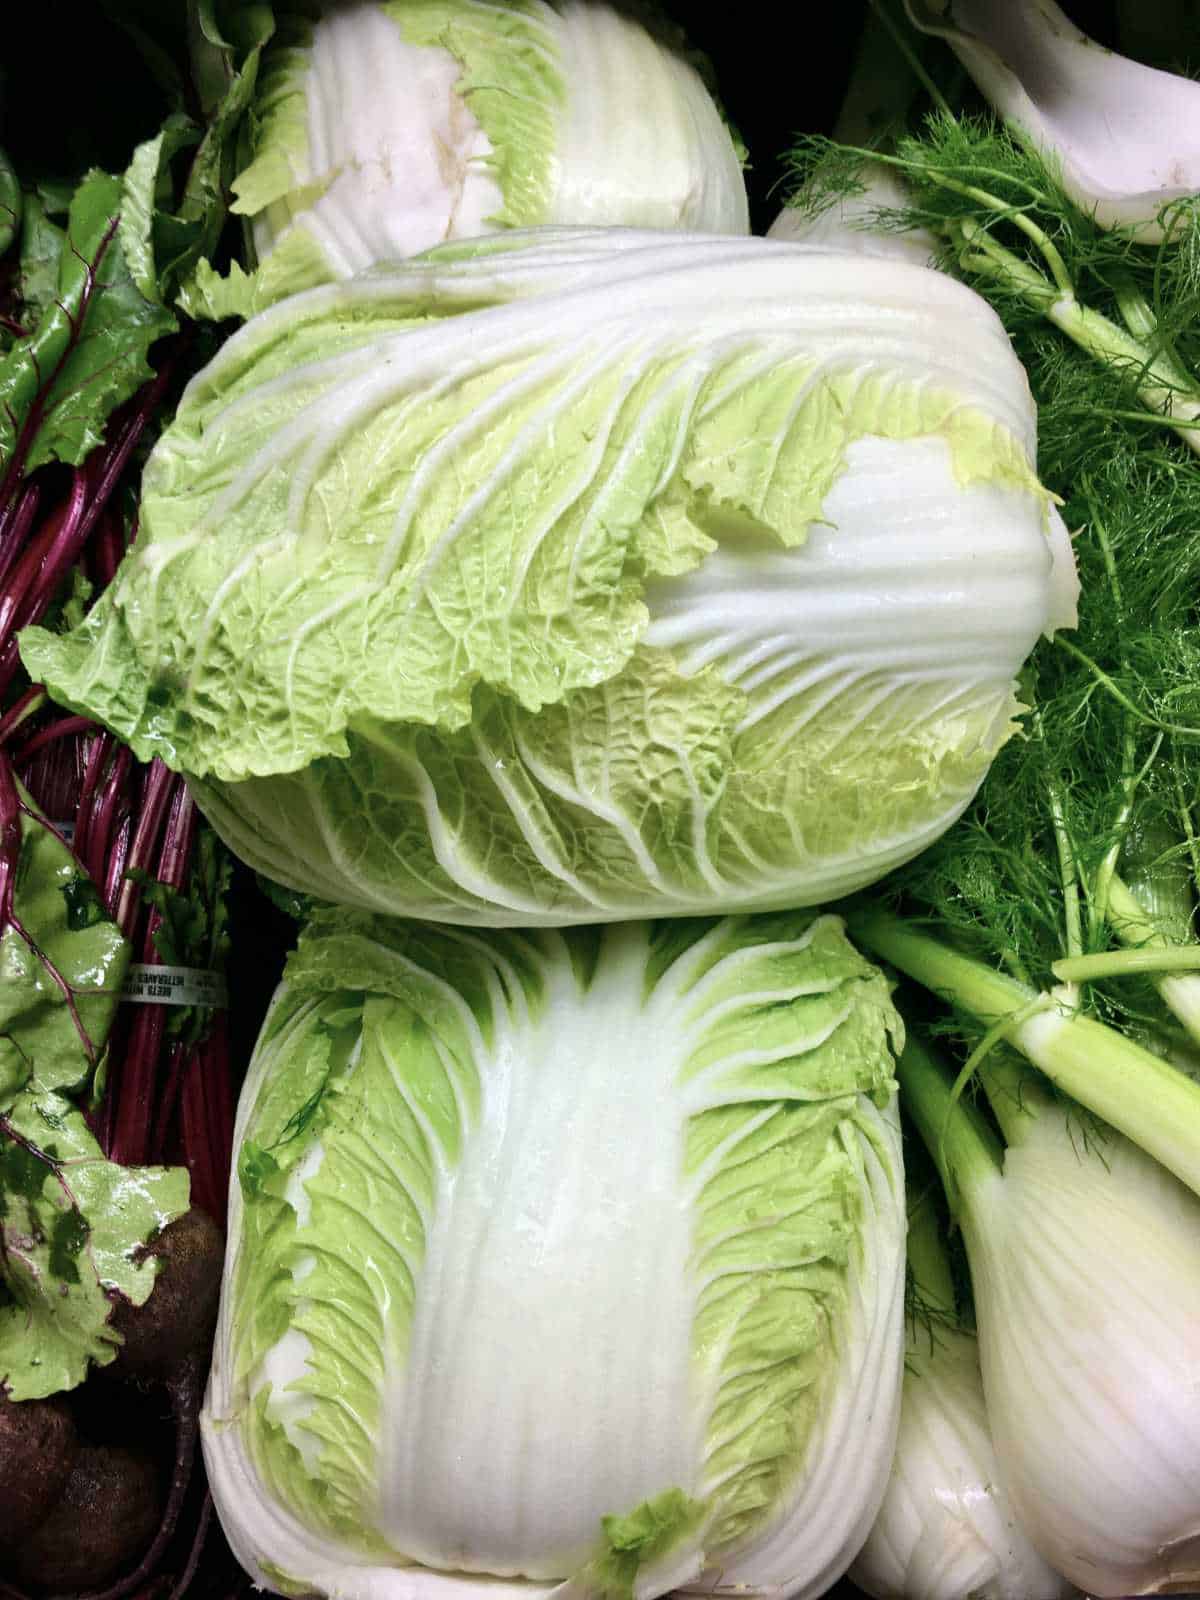 Napa cabbage with fresh cut fennel.